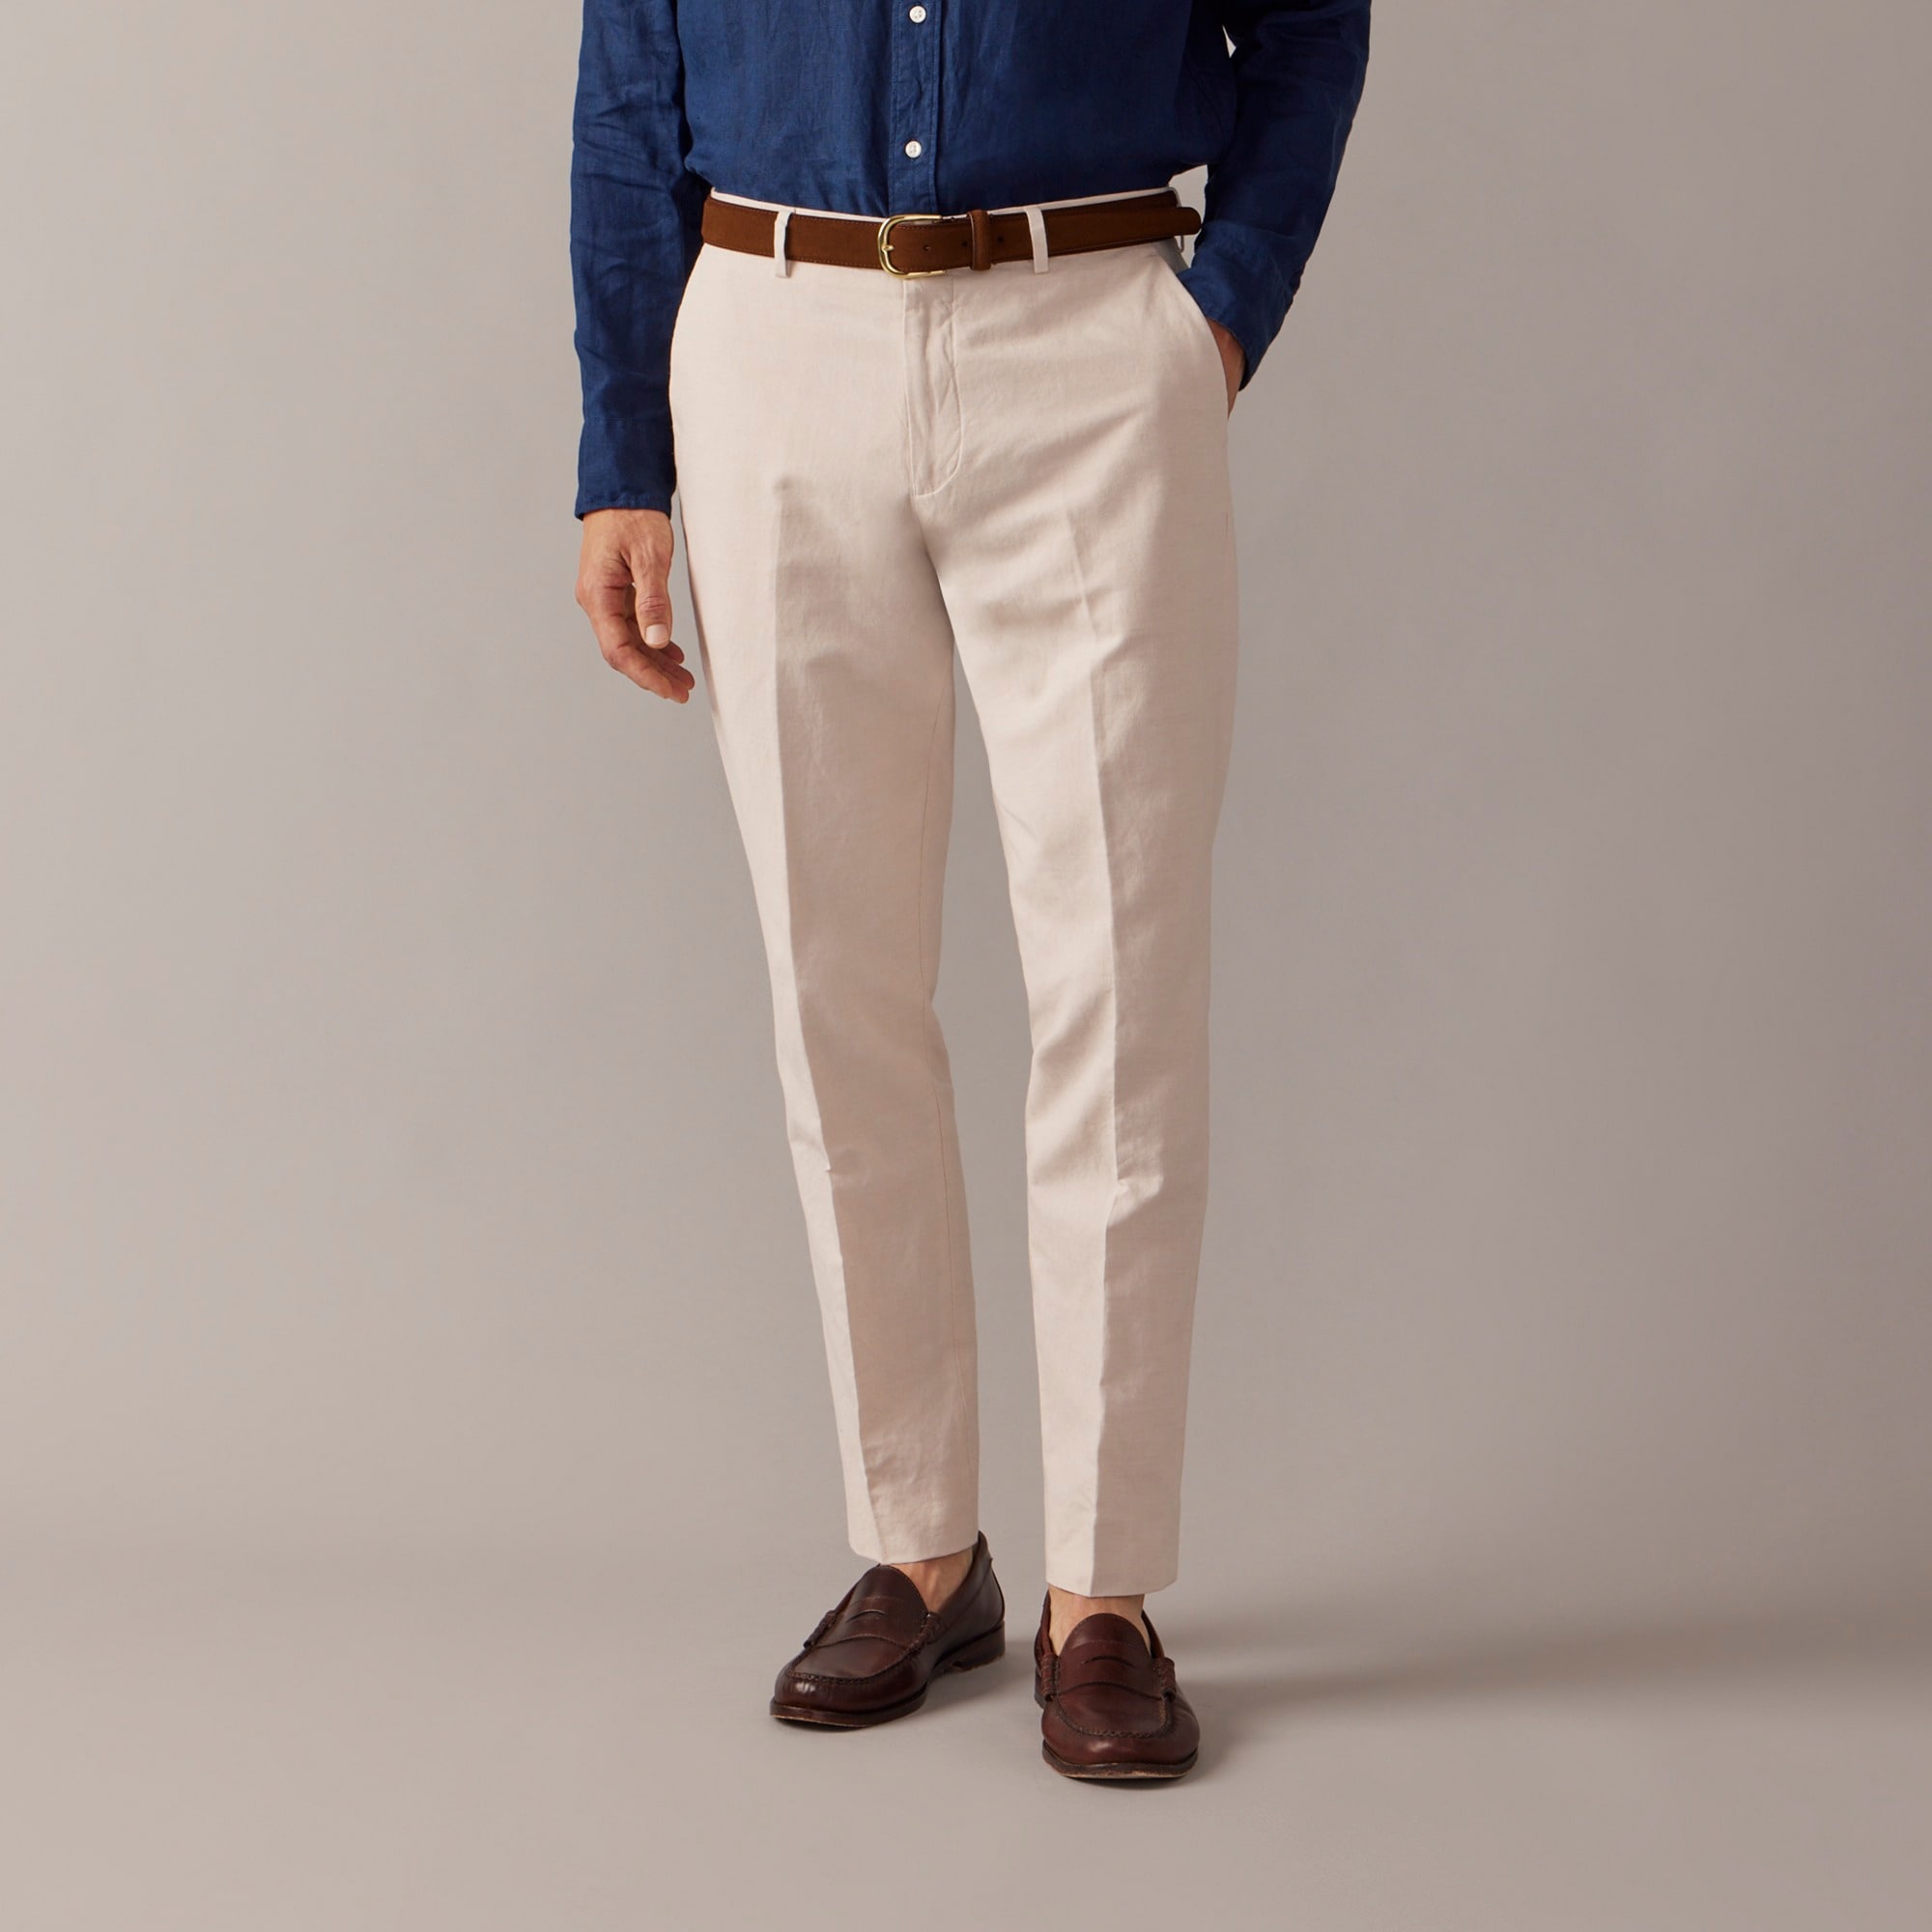 Jcrew Ludlow Slim-fit unstructured suit pant in Irish cotton-linen blend